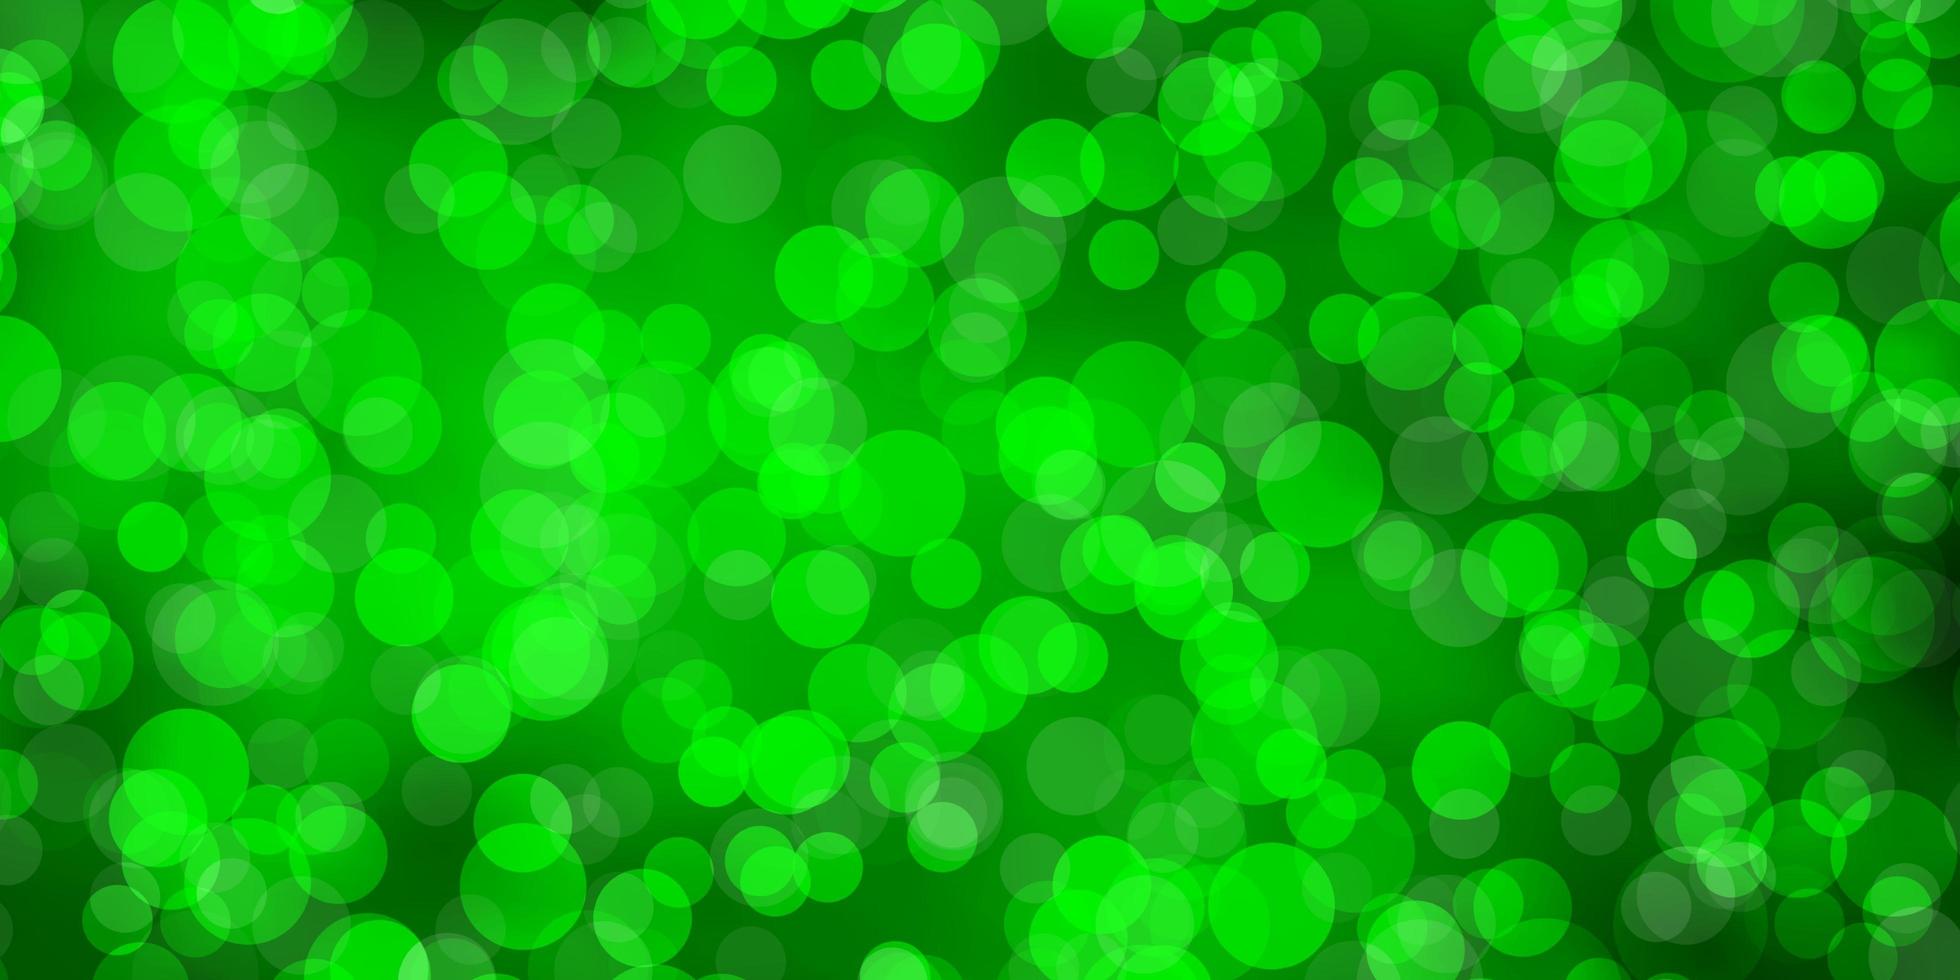 ljusgrönt vektormönster med cirklar färgstark illustration med lutningspunkter i naturstilmönster för broschyrerbroschyrer vektor